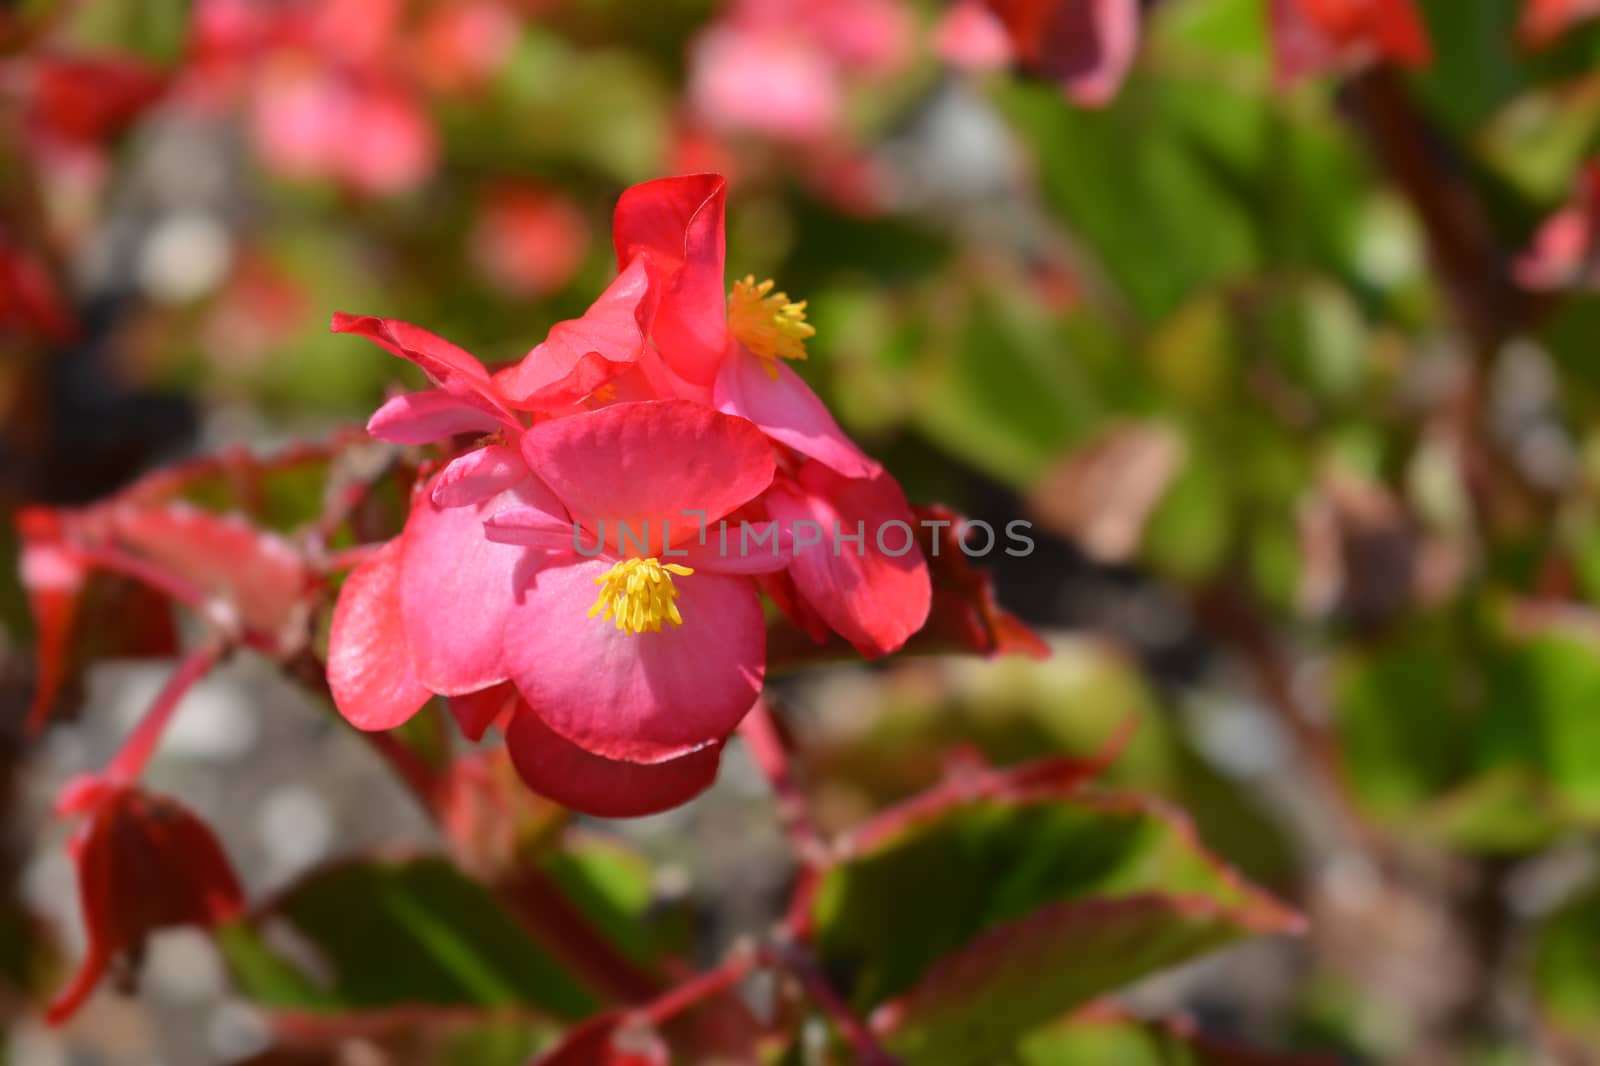 Wax begonia - Latin name - Begonia semperflorens